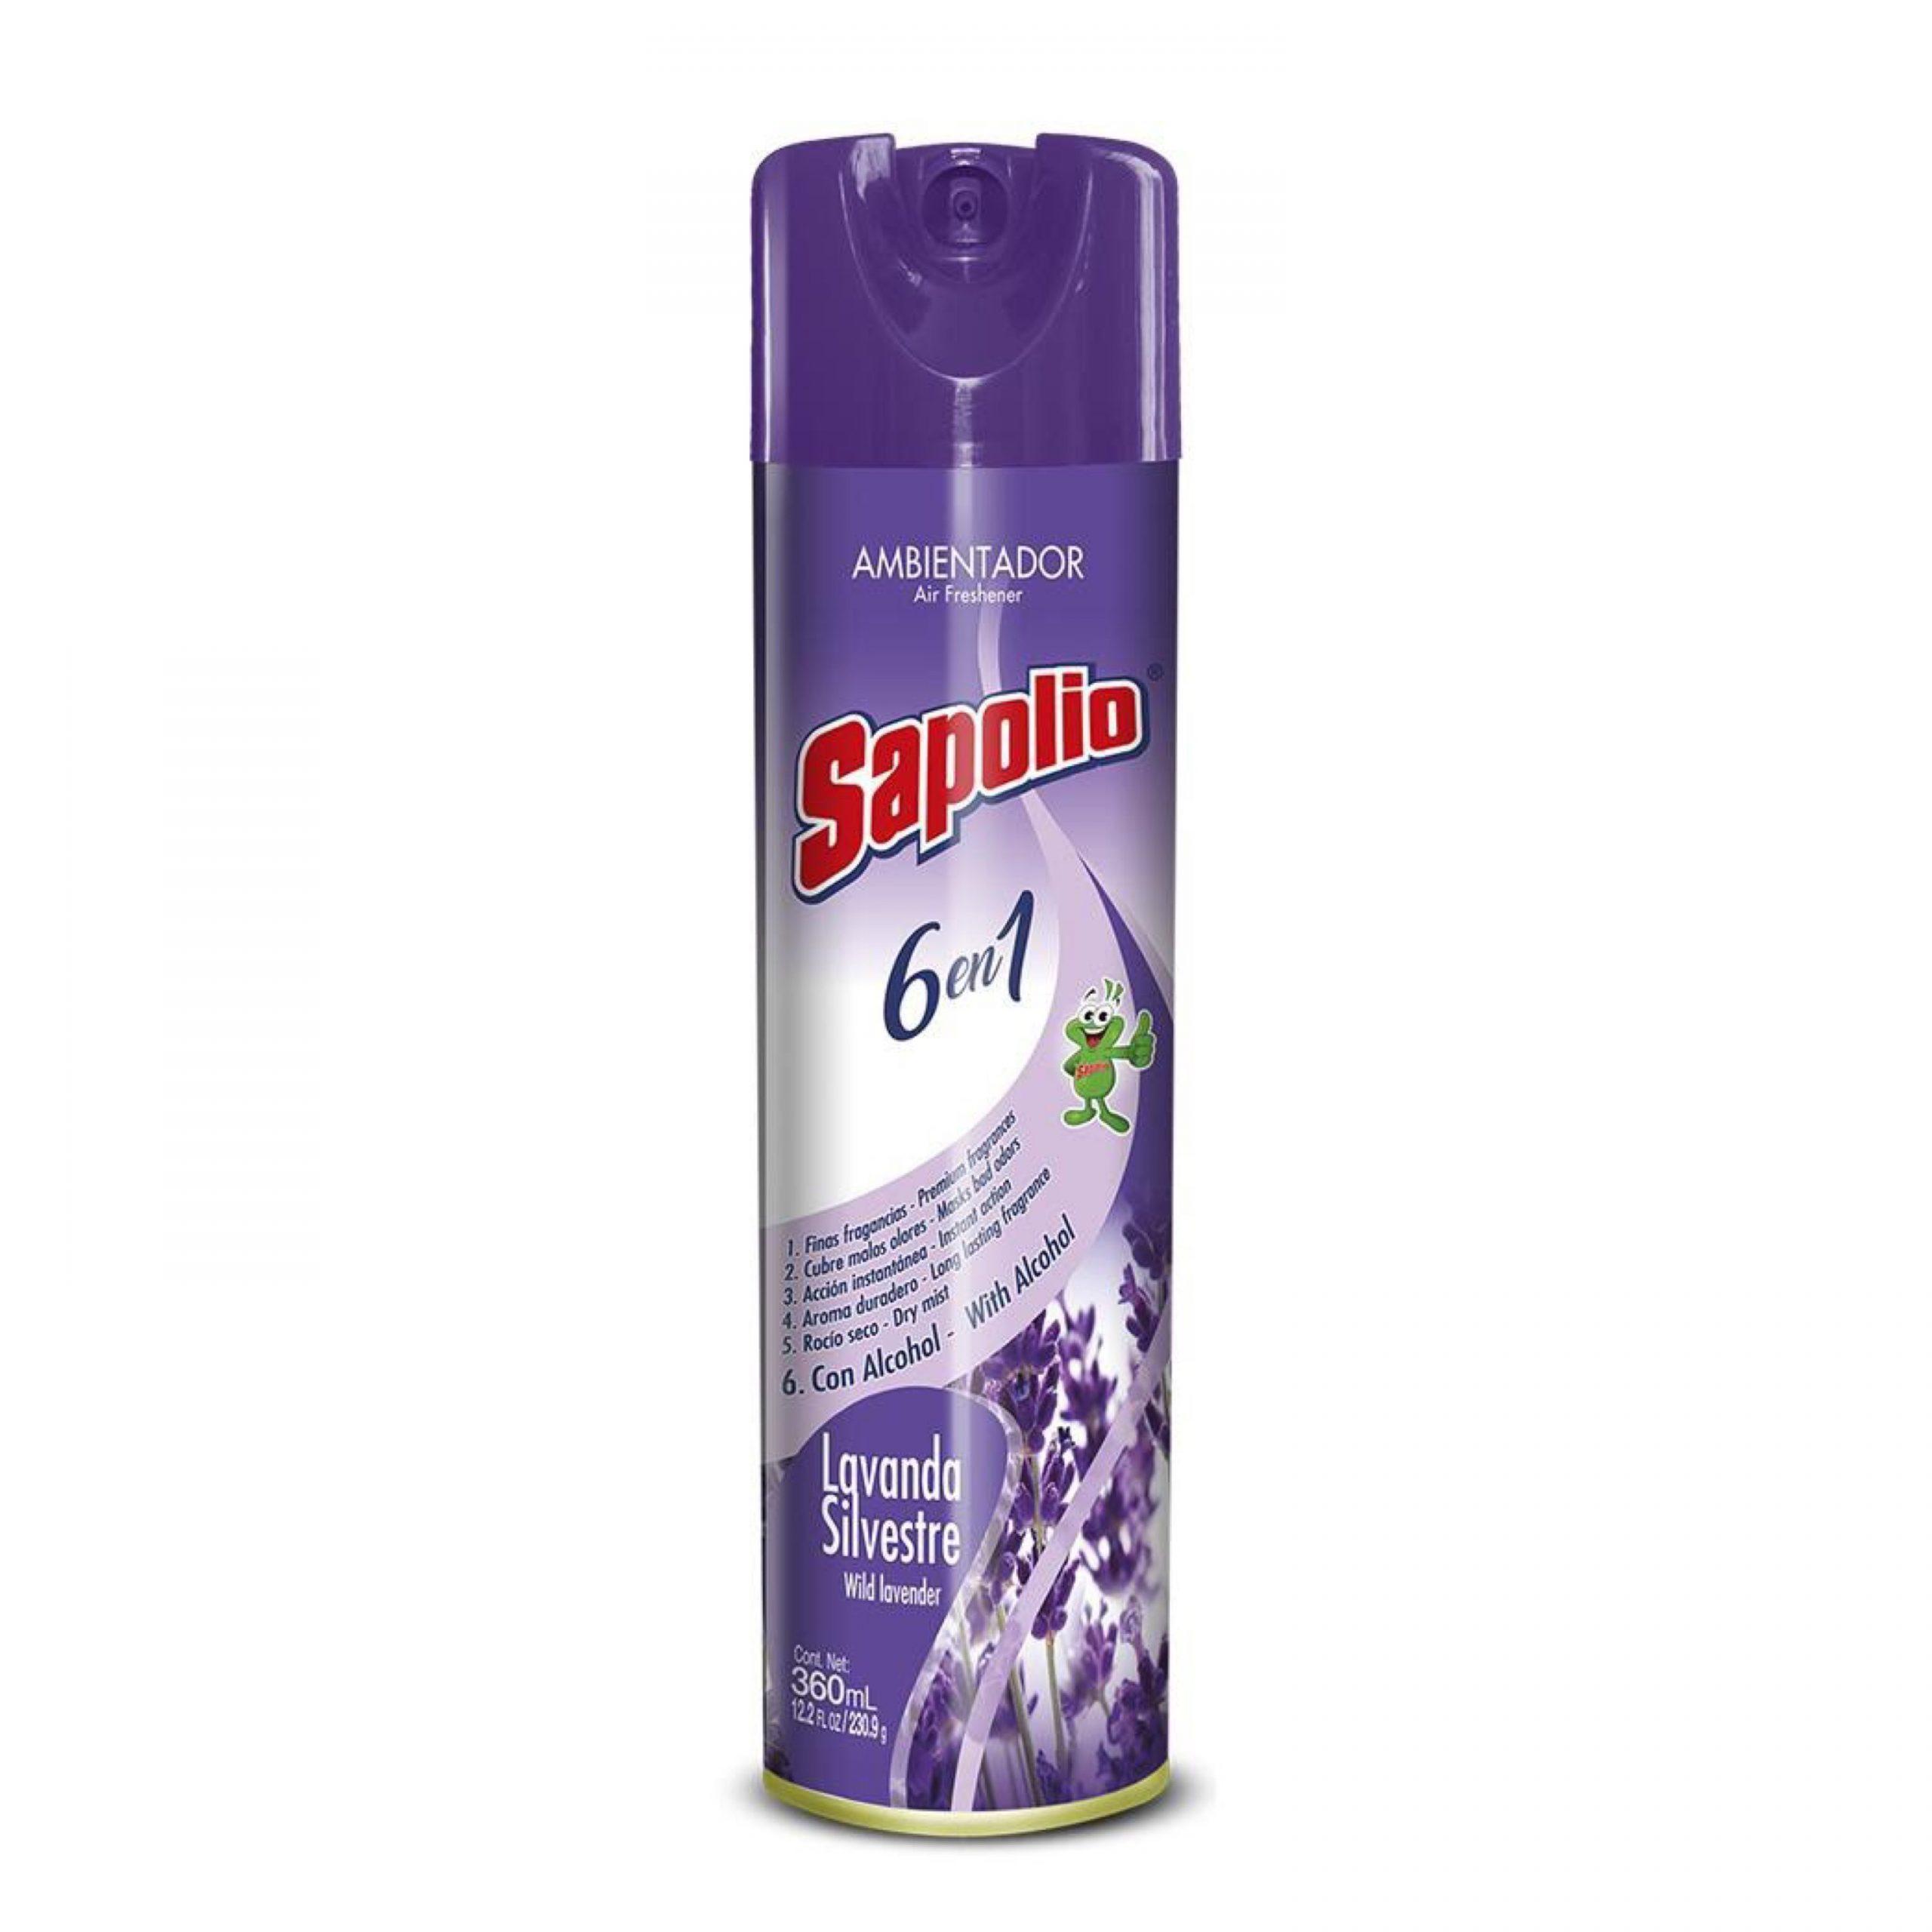 Desinfectante en Spray SAPOLIO Lavanda Frasco 360ml